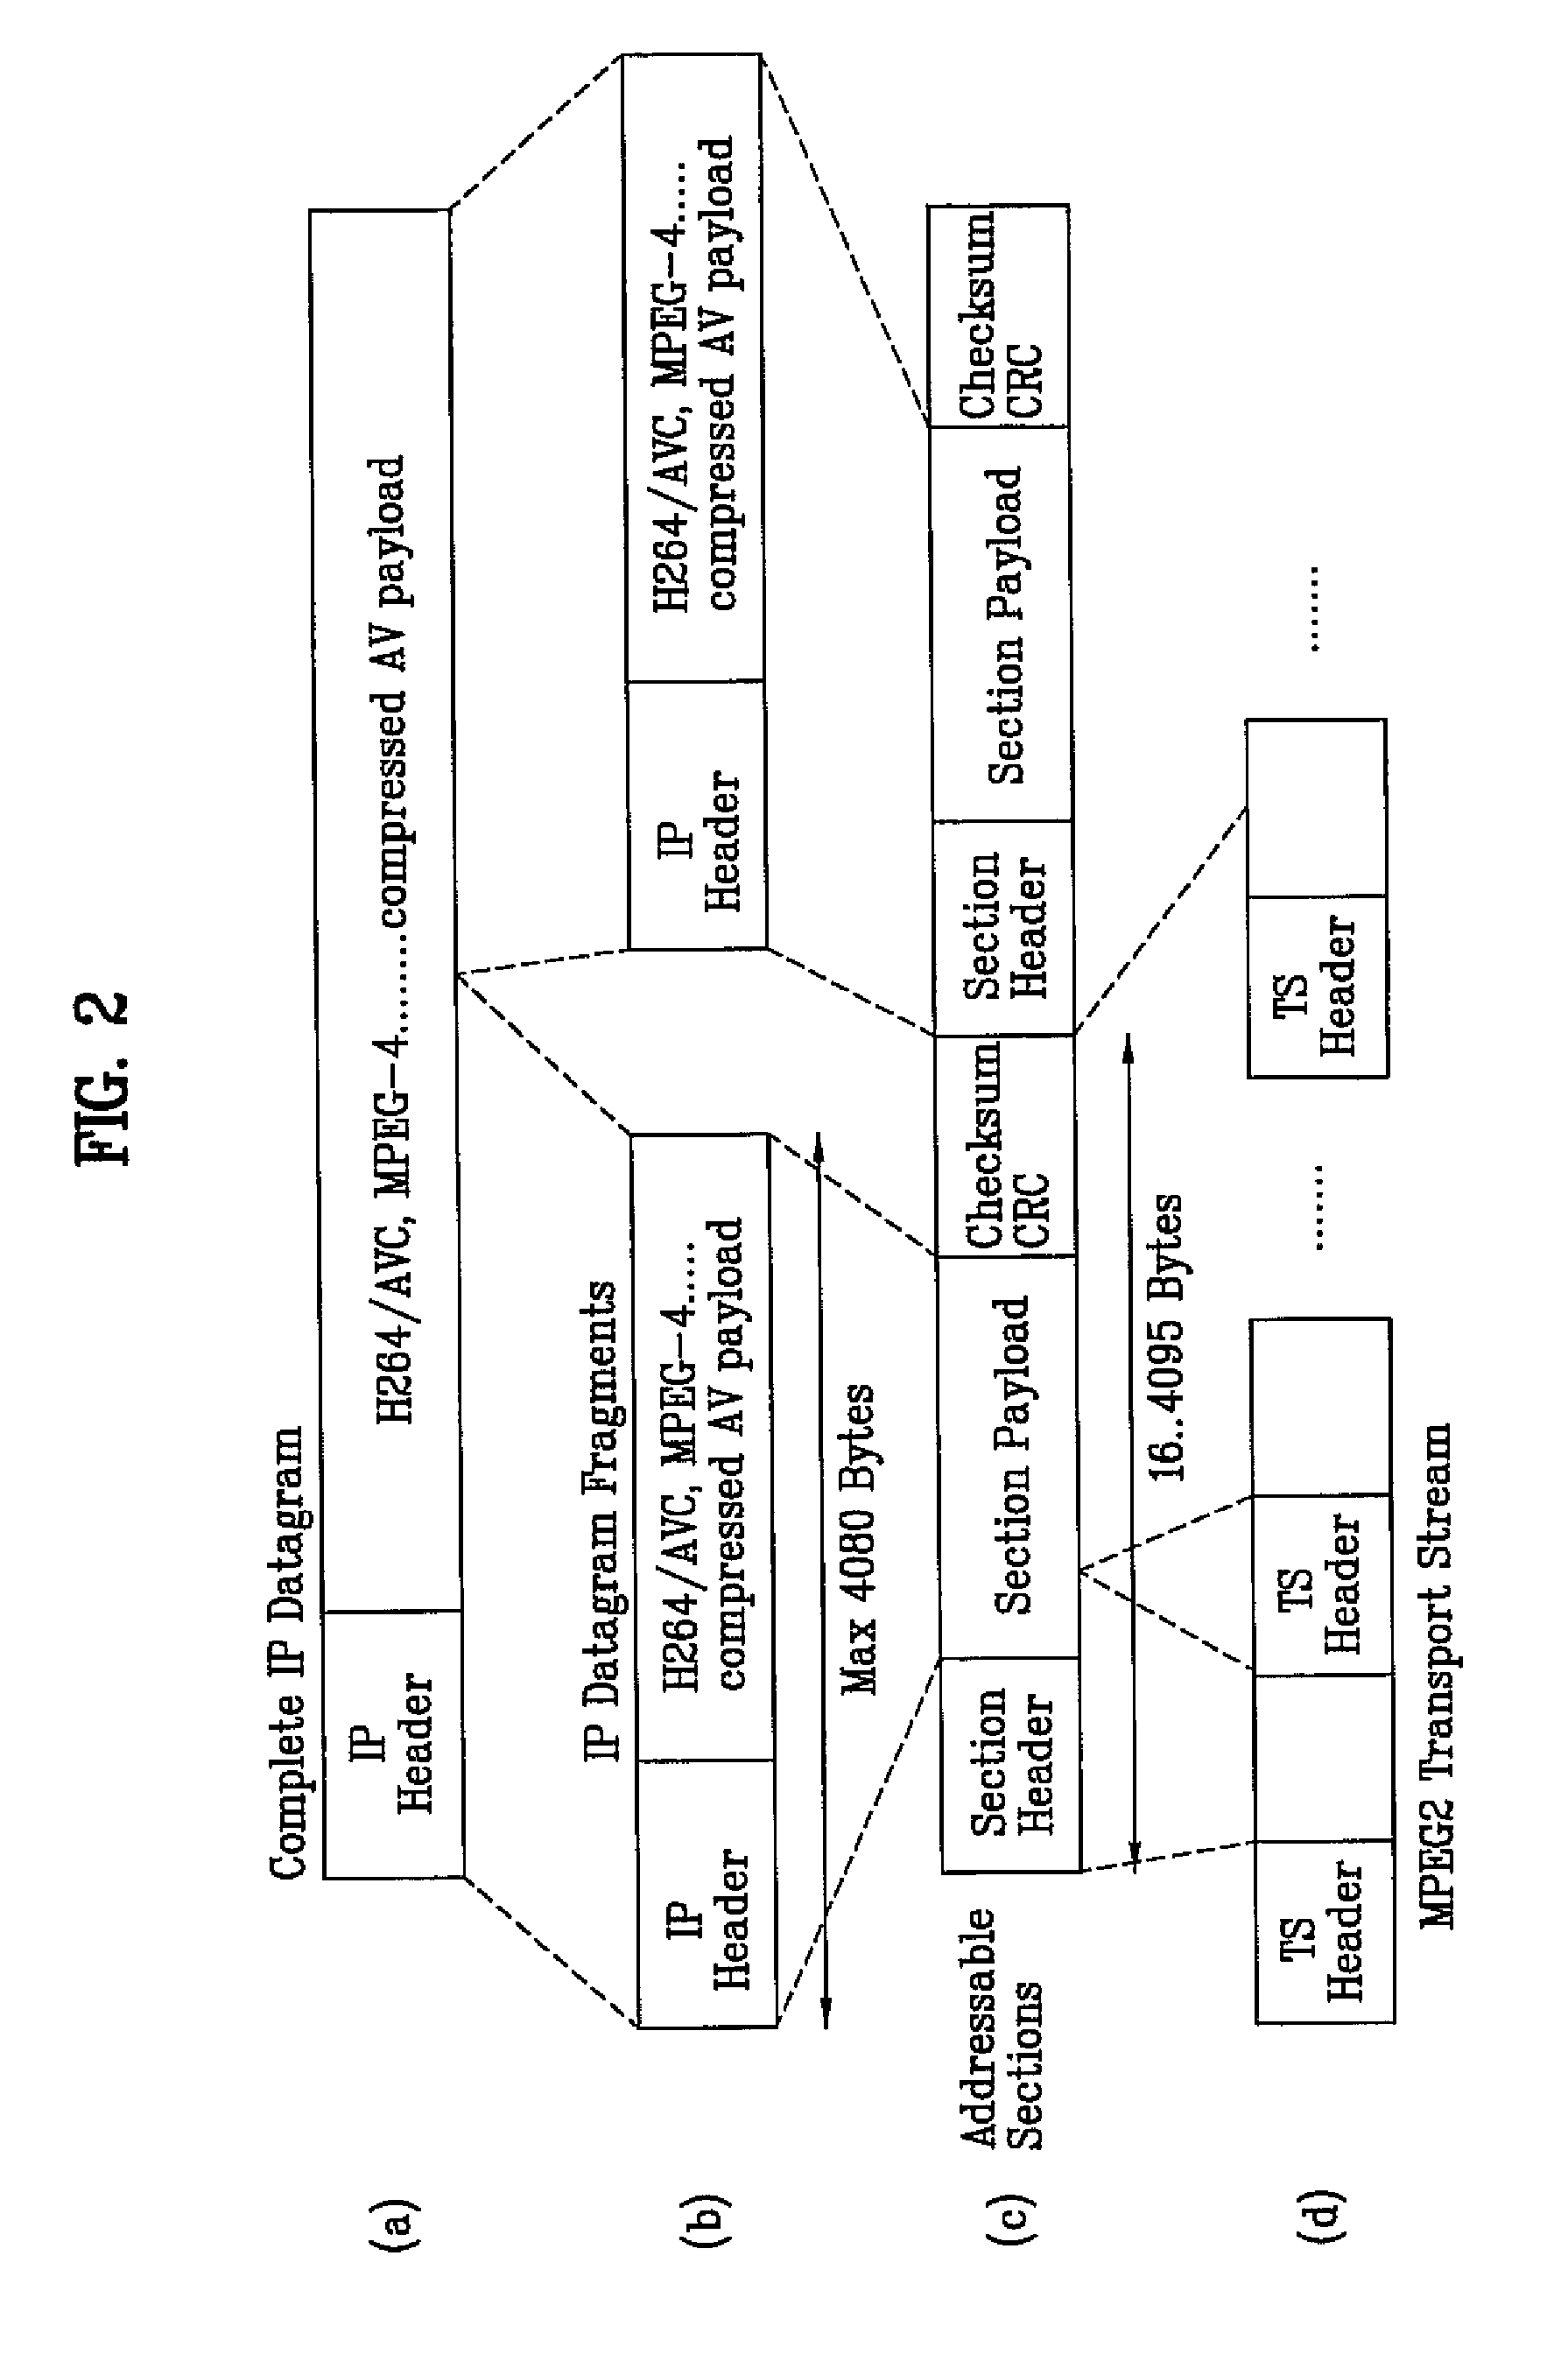 DTV transmitter and method of coding data in DTV transmitter